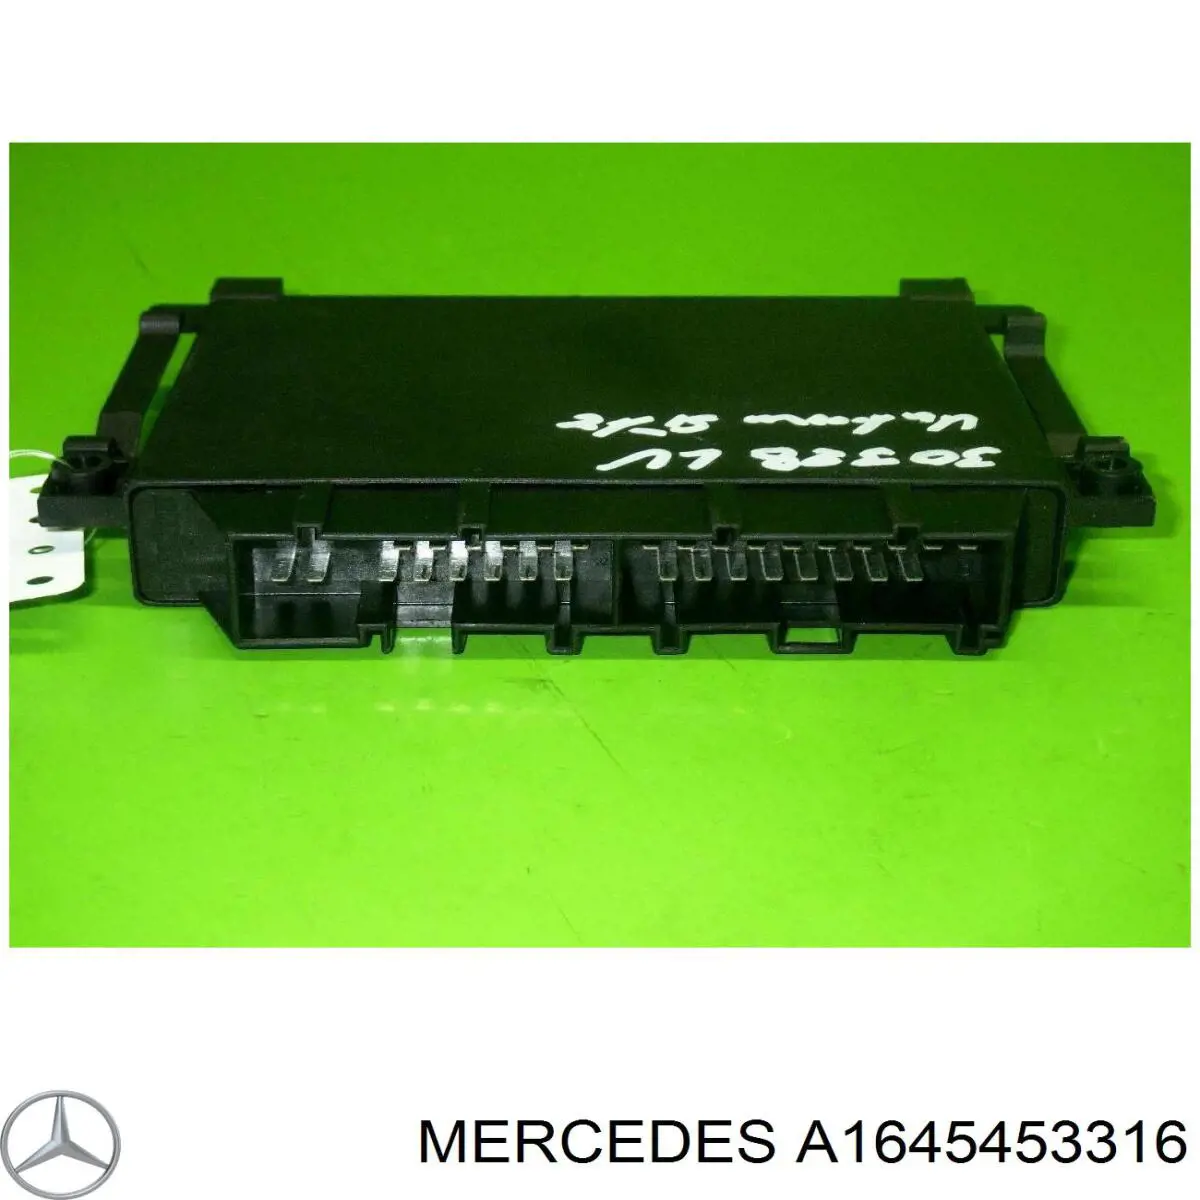 A164545331680 Mercedes unidad de control, auxiliar de aparcamiento